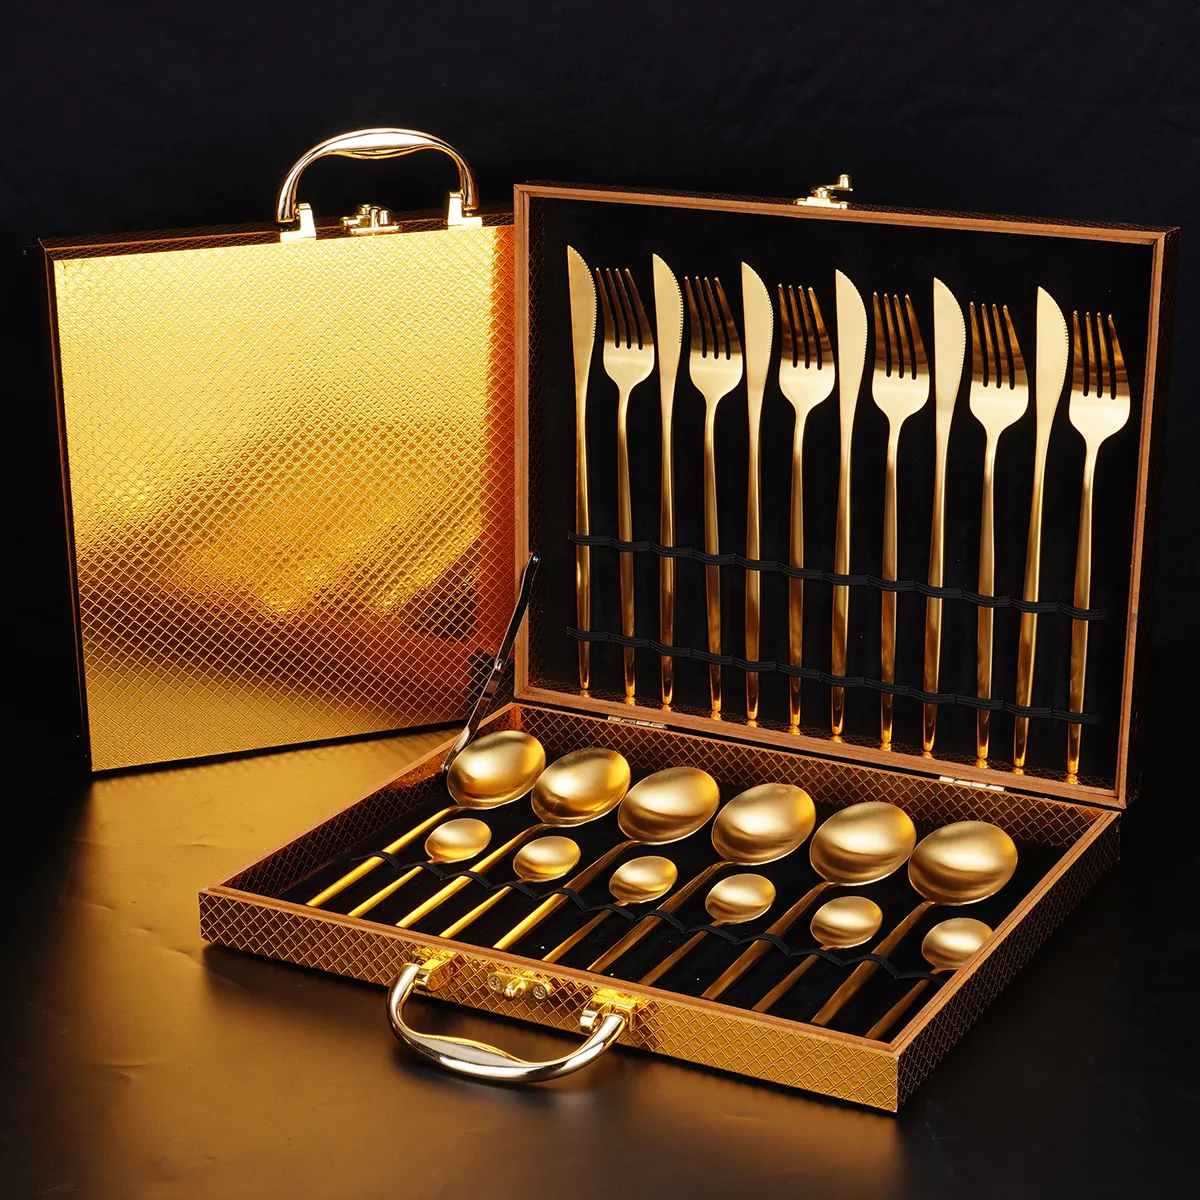 Großhandel hochwertiges Messer-Löffel-Gabel-Set Edelstahl mattes Hochzeitsbesteck Geschenk Silberwaren Goldbesteck-Set mit Schachtel